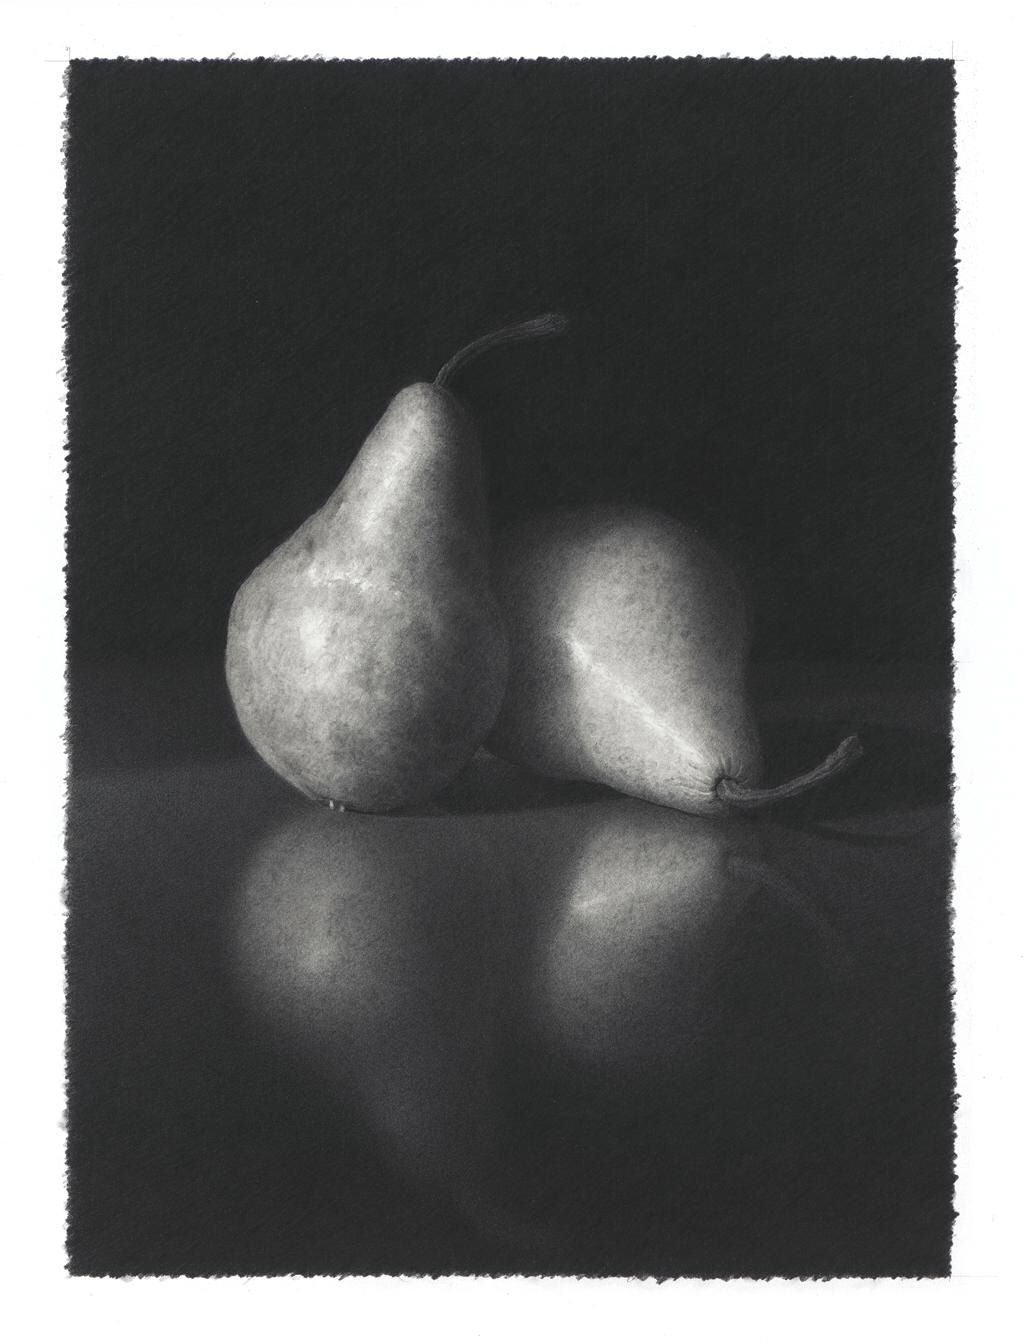 Skip Steinworth "Two Pears" 14" x 10"